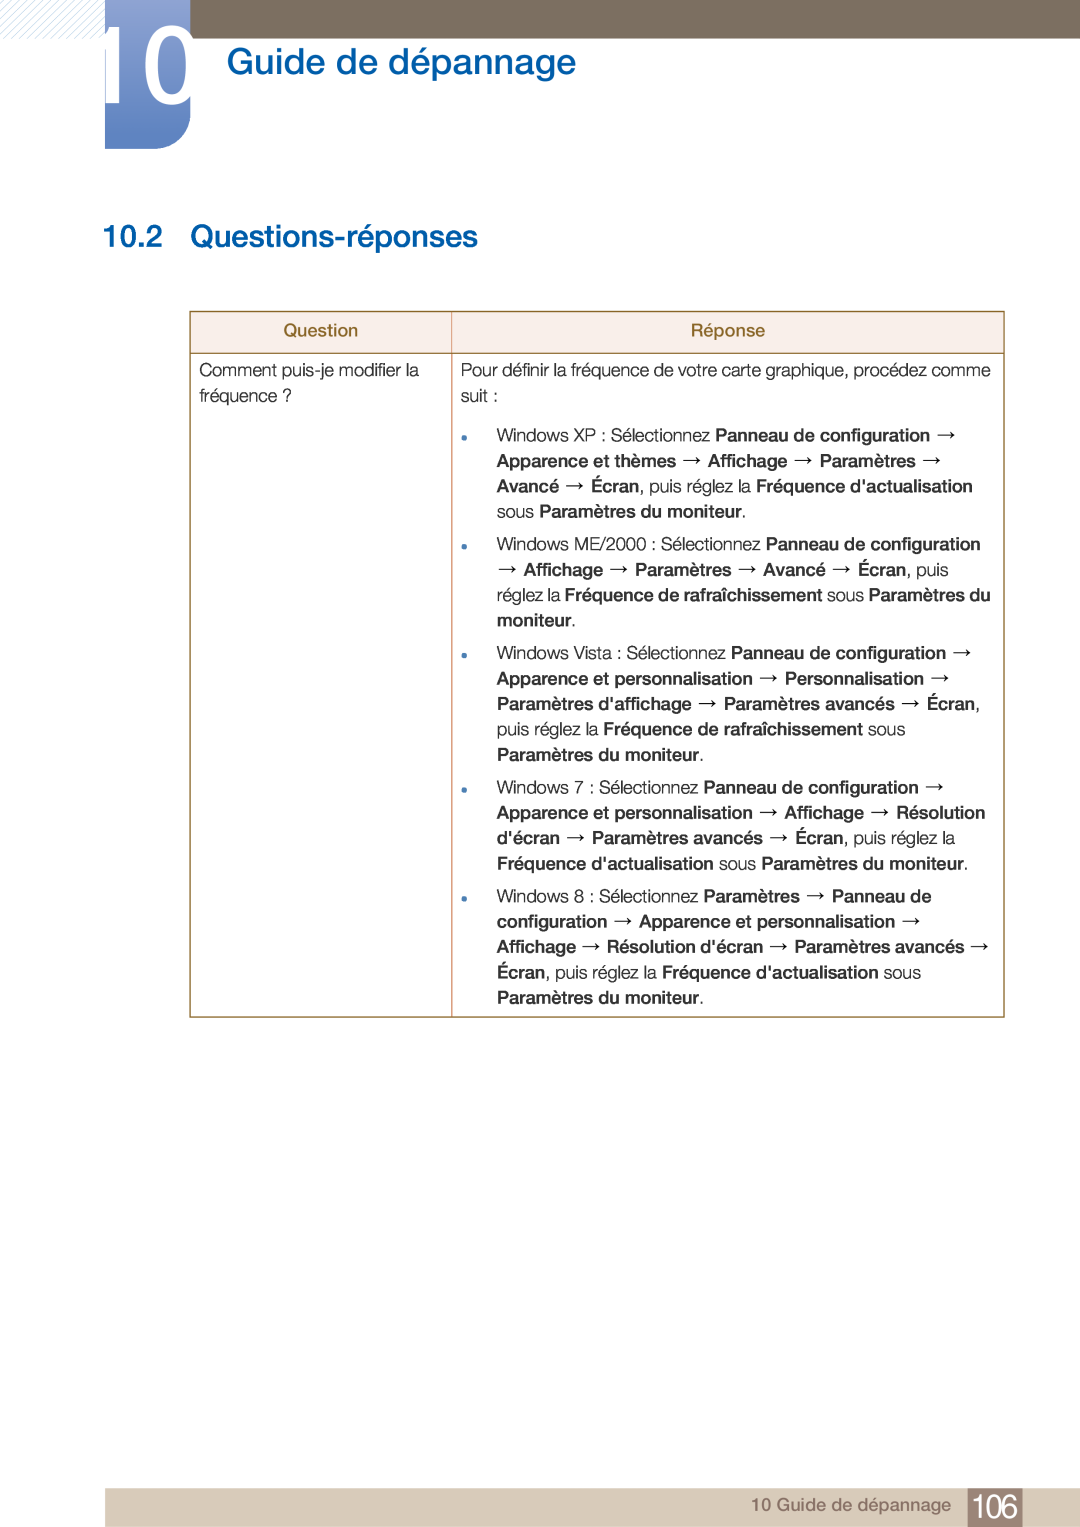 Samsung LF22NTBHBNM/EN, LF22FN1PFBZXEN manual Questions-réponses, Guide de dépannage, Réponse 